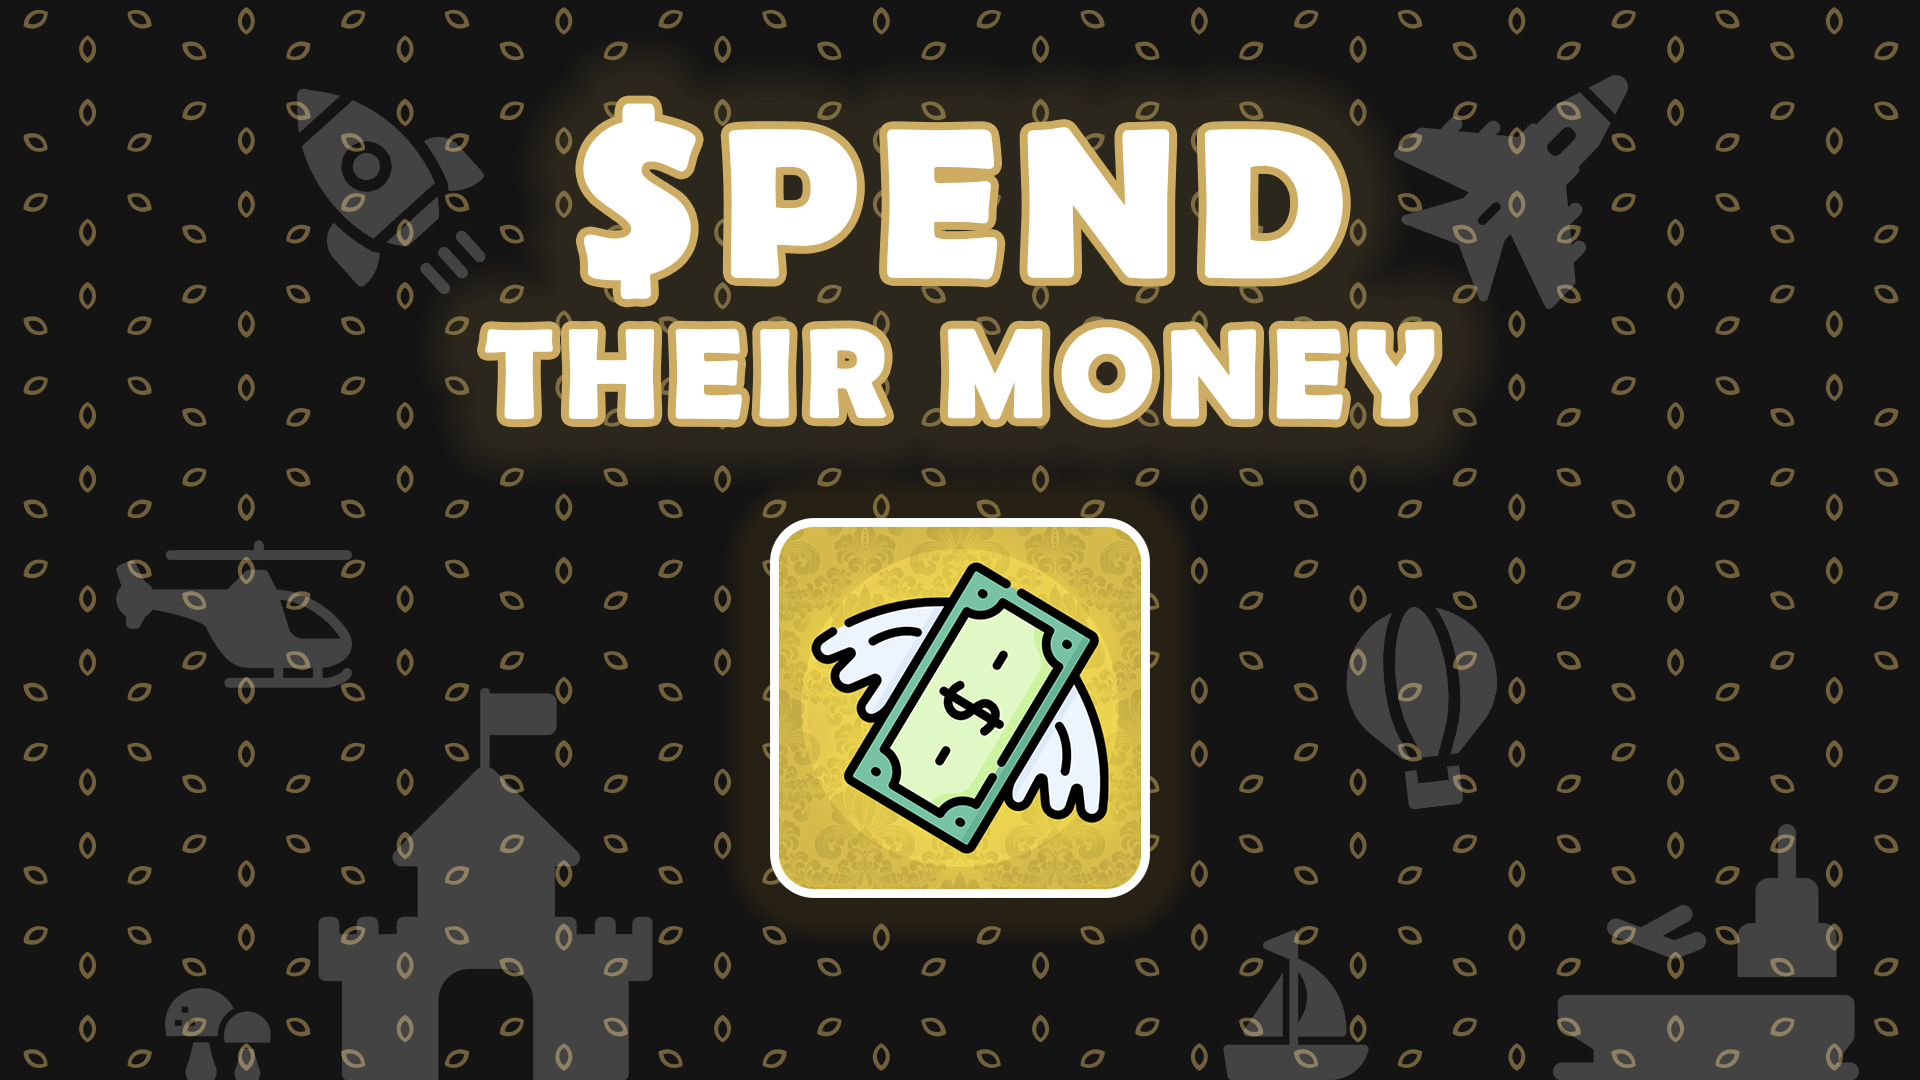 Spend Their Money - 1920 x 1080